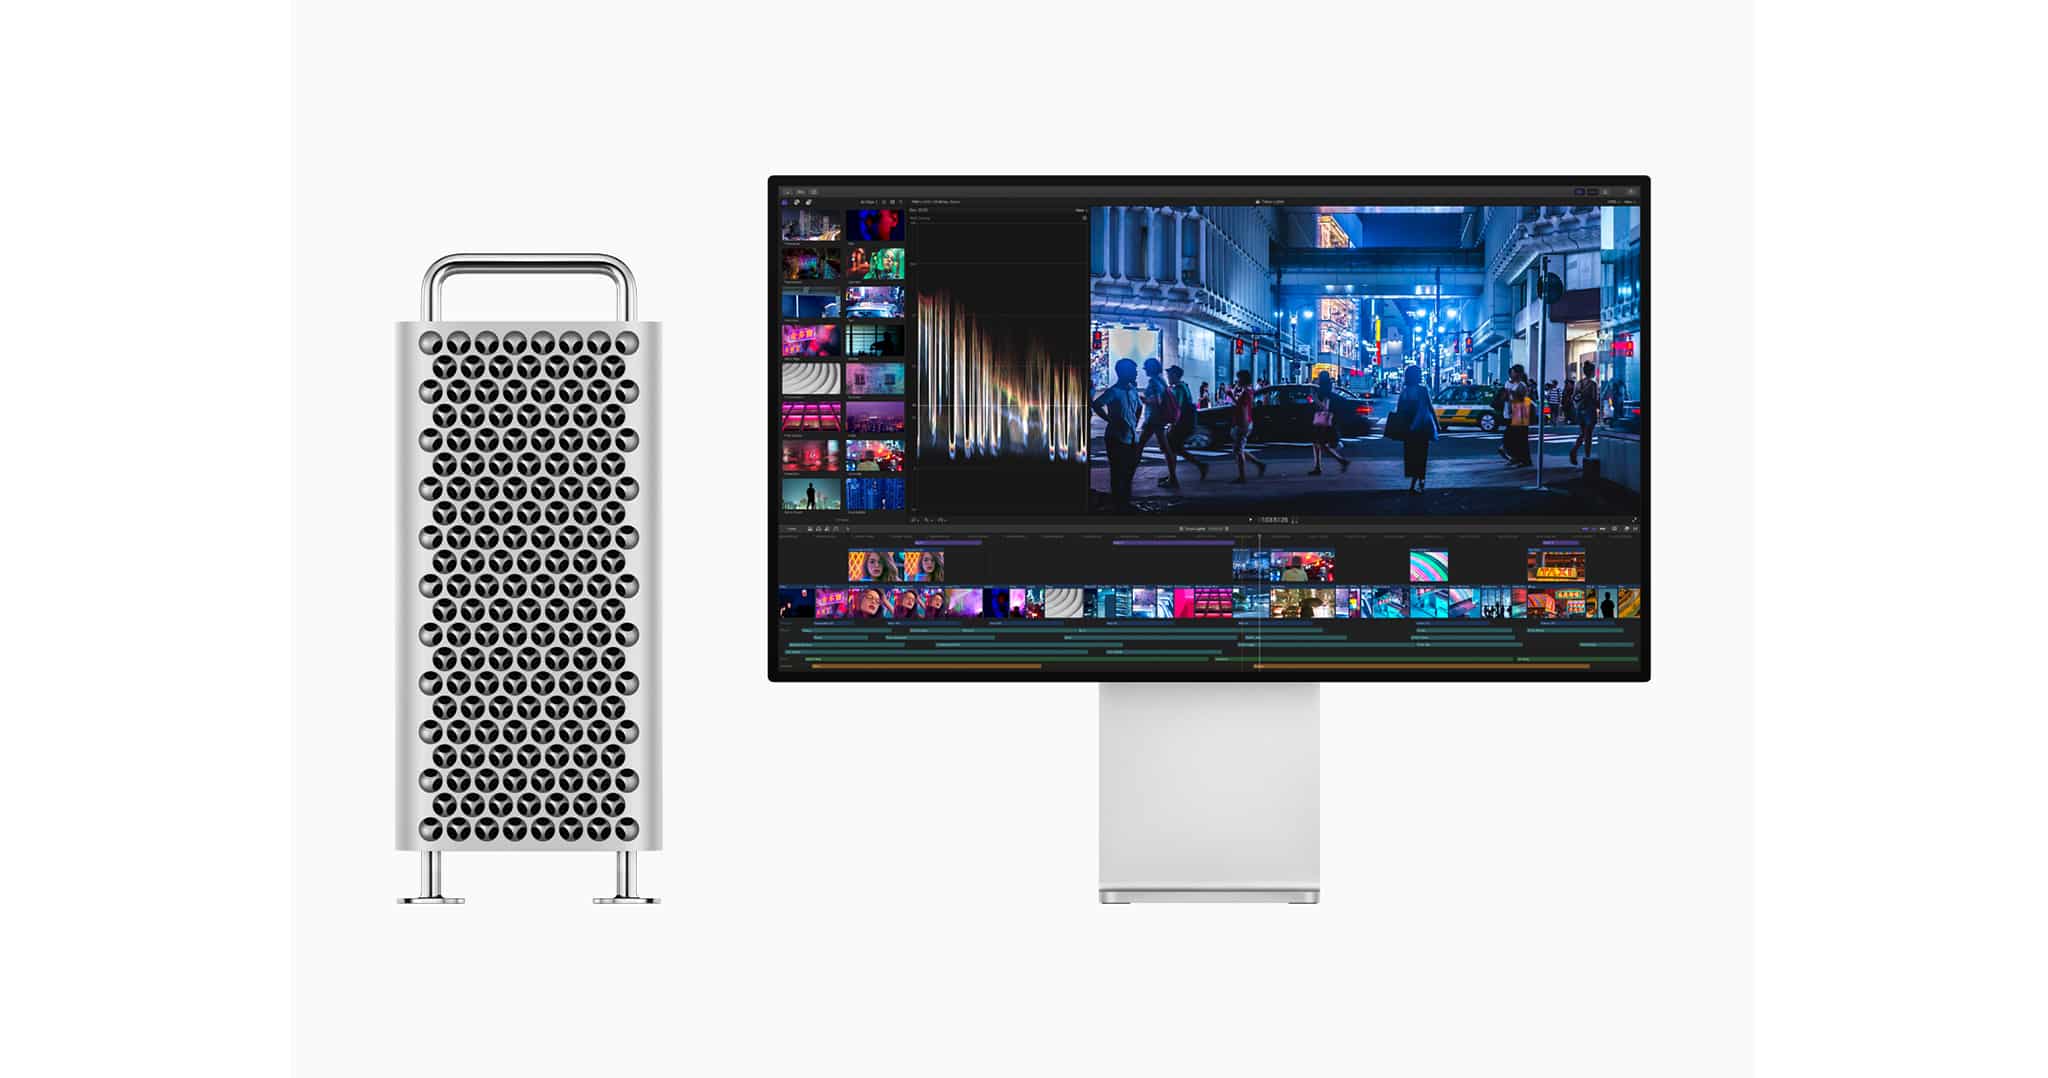 Mac Pro ใหม่ล่าสุดขับเคลื่อนประสิทธิภาพด้วยกราฟิกการ์ด AMD Radeon ประสิทธิภาพสูง